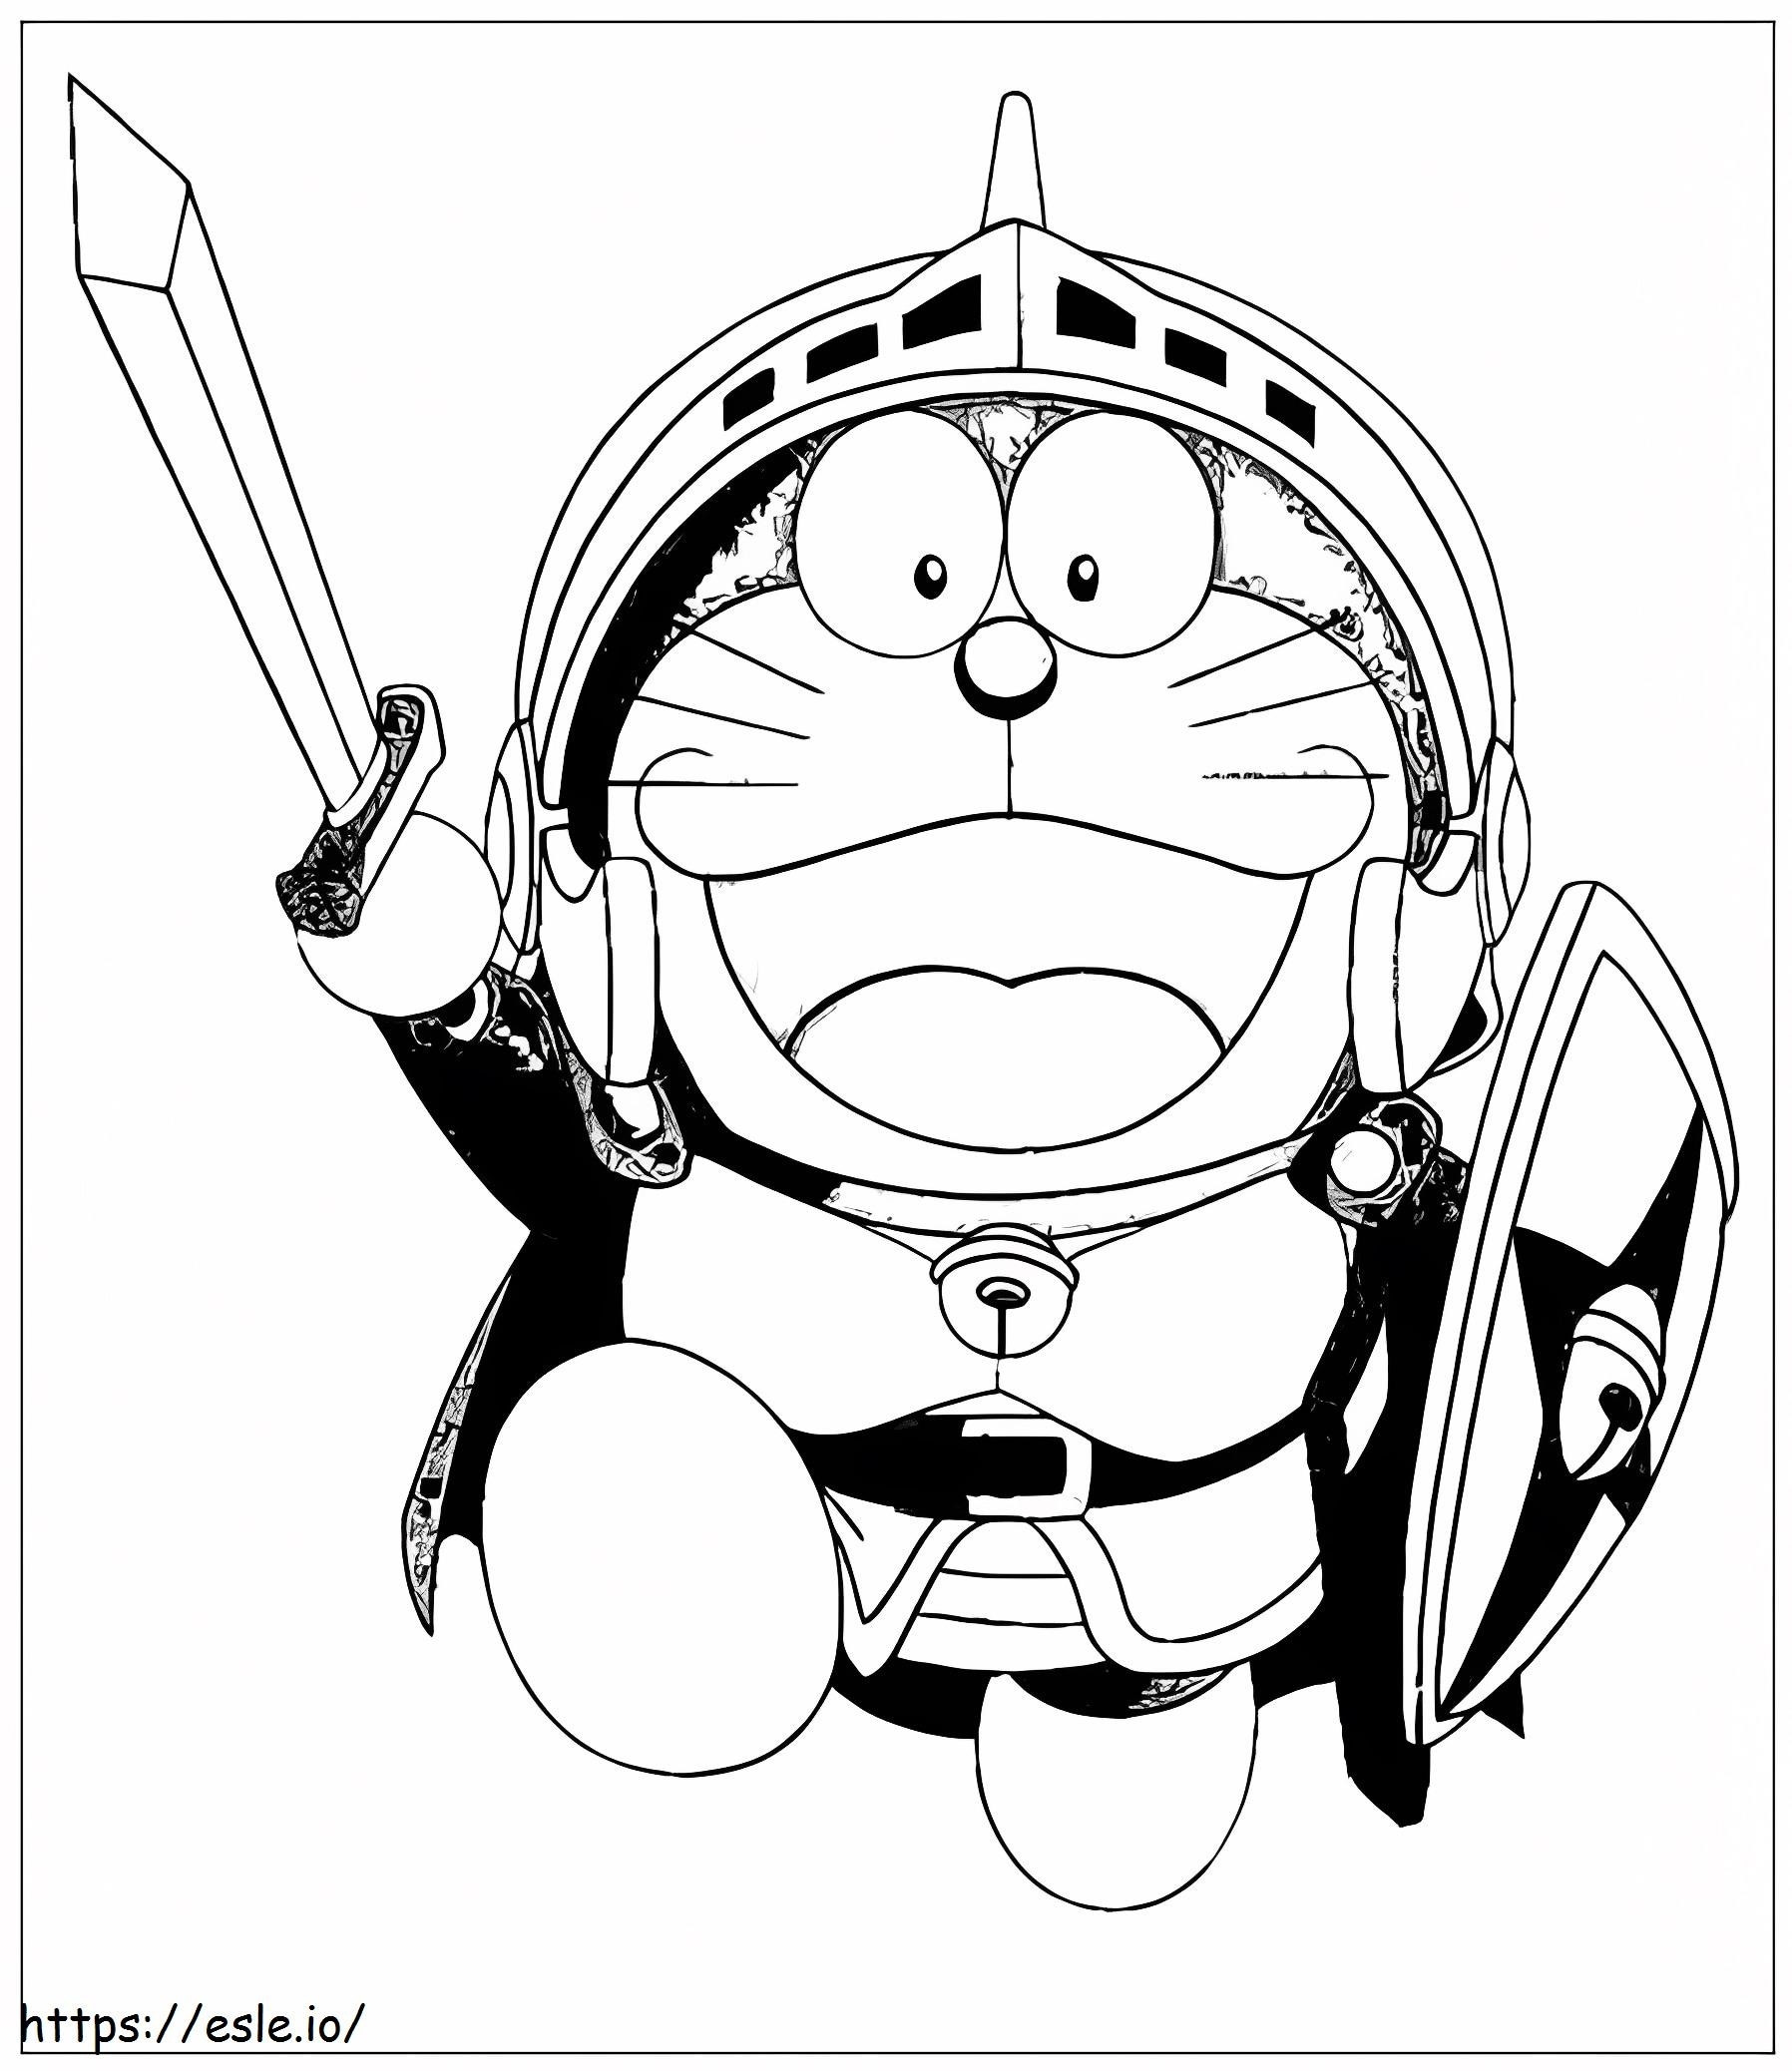 Caballero Doraemon ausmalbilder